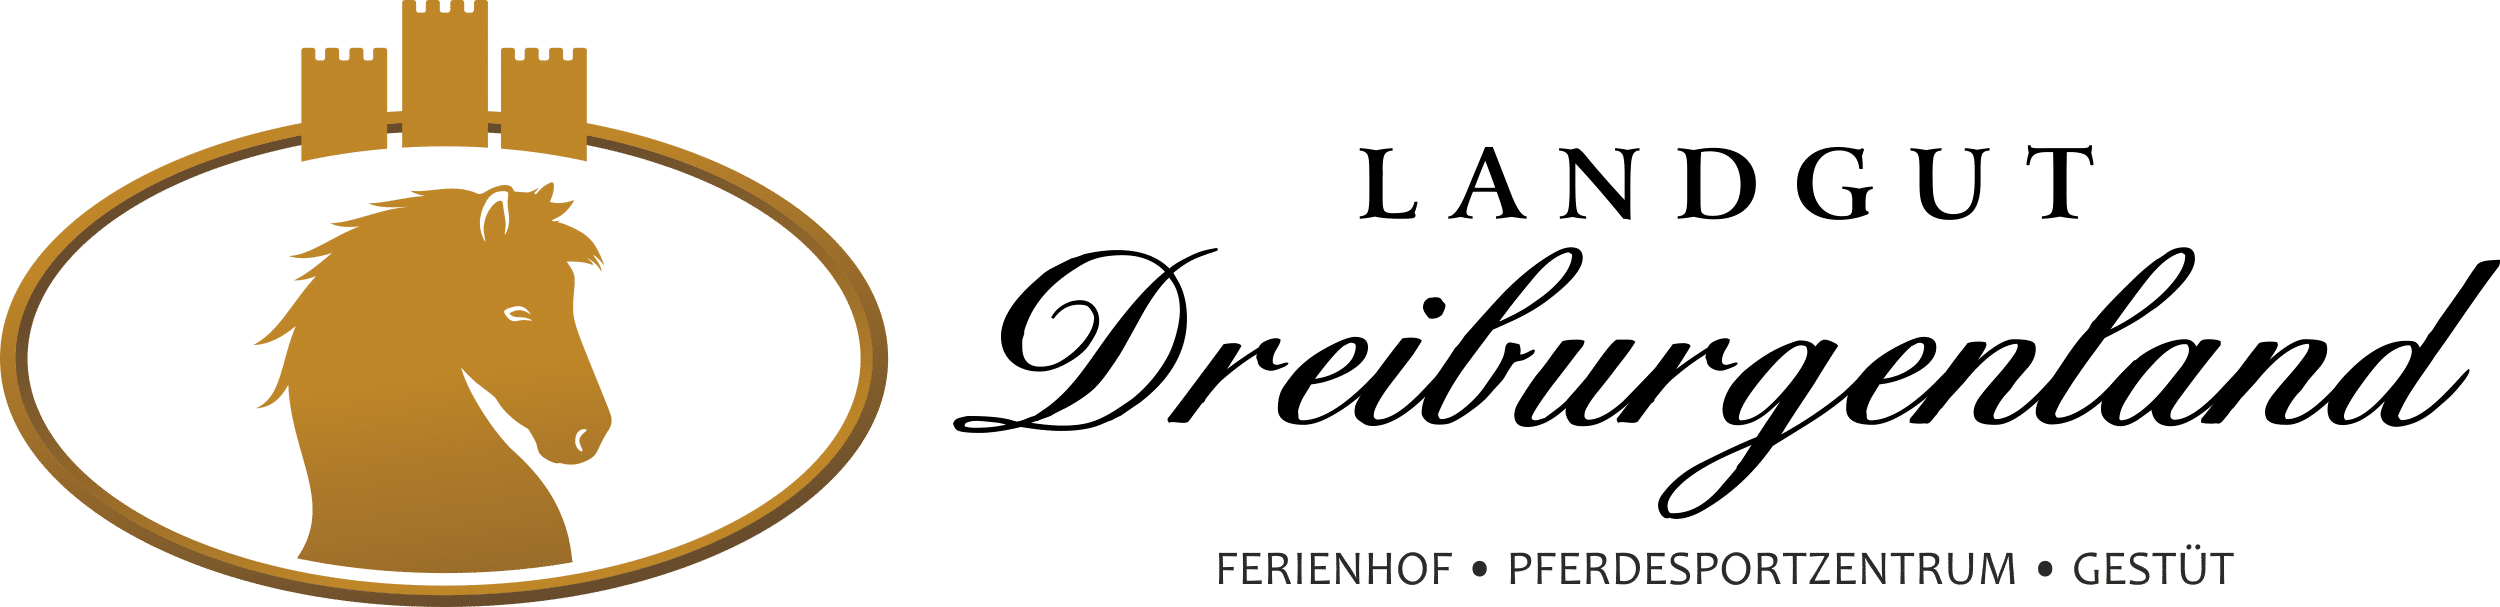 Ferienhof, Pferdesportzentrum und Gestüt "Landgut Dreiburgenland" | Reiterhof im Bayerischen Wald - Landgut-Dreiburgenland